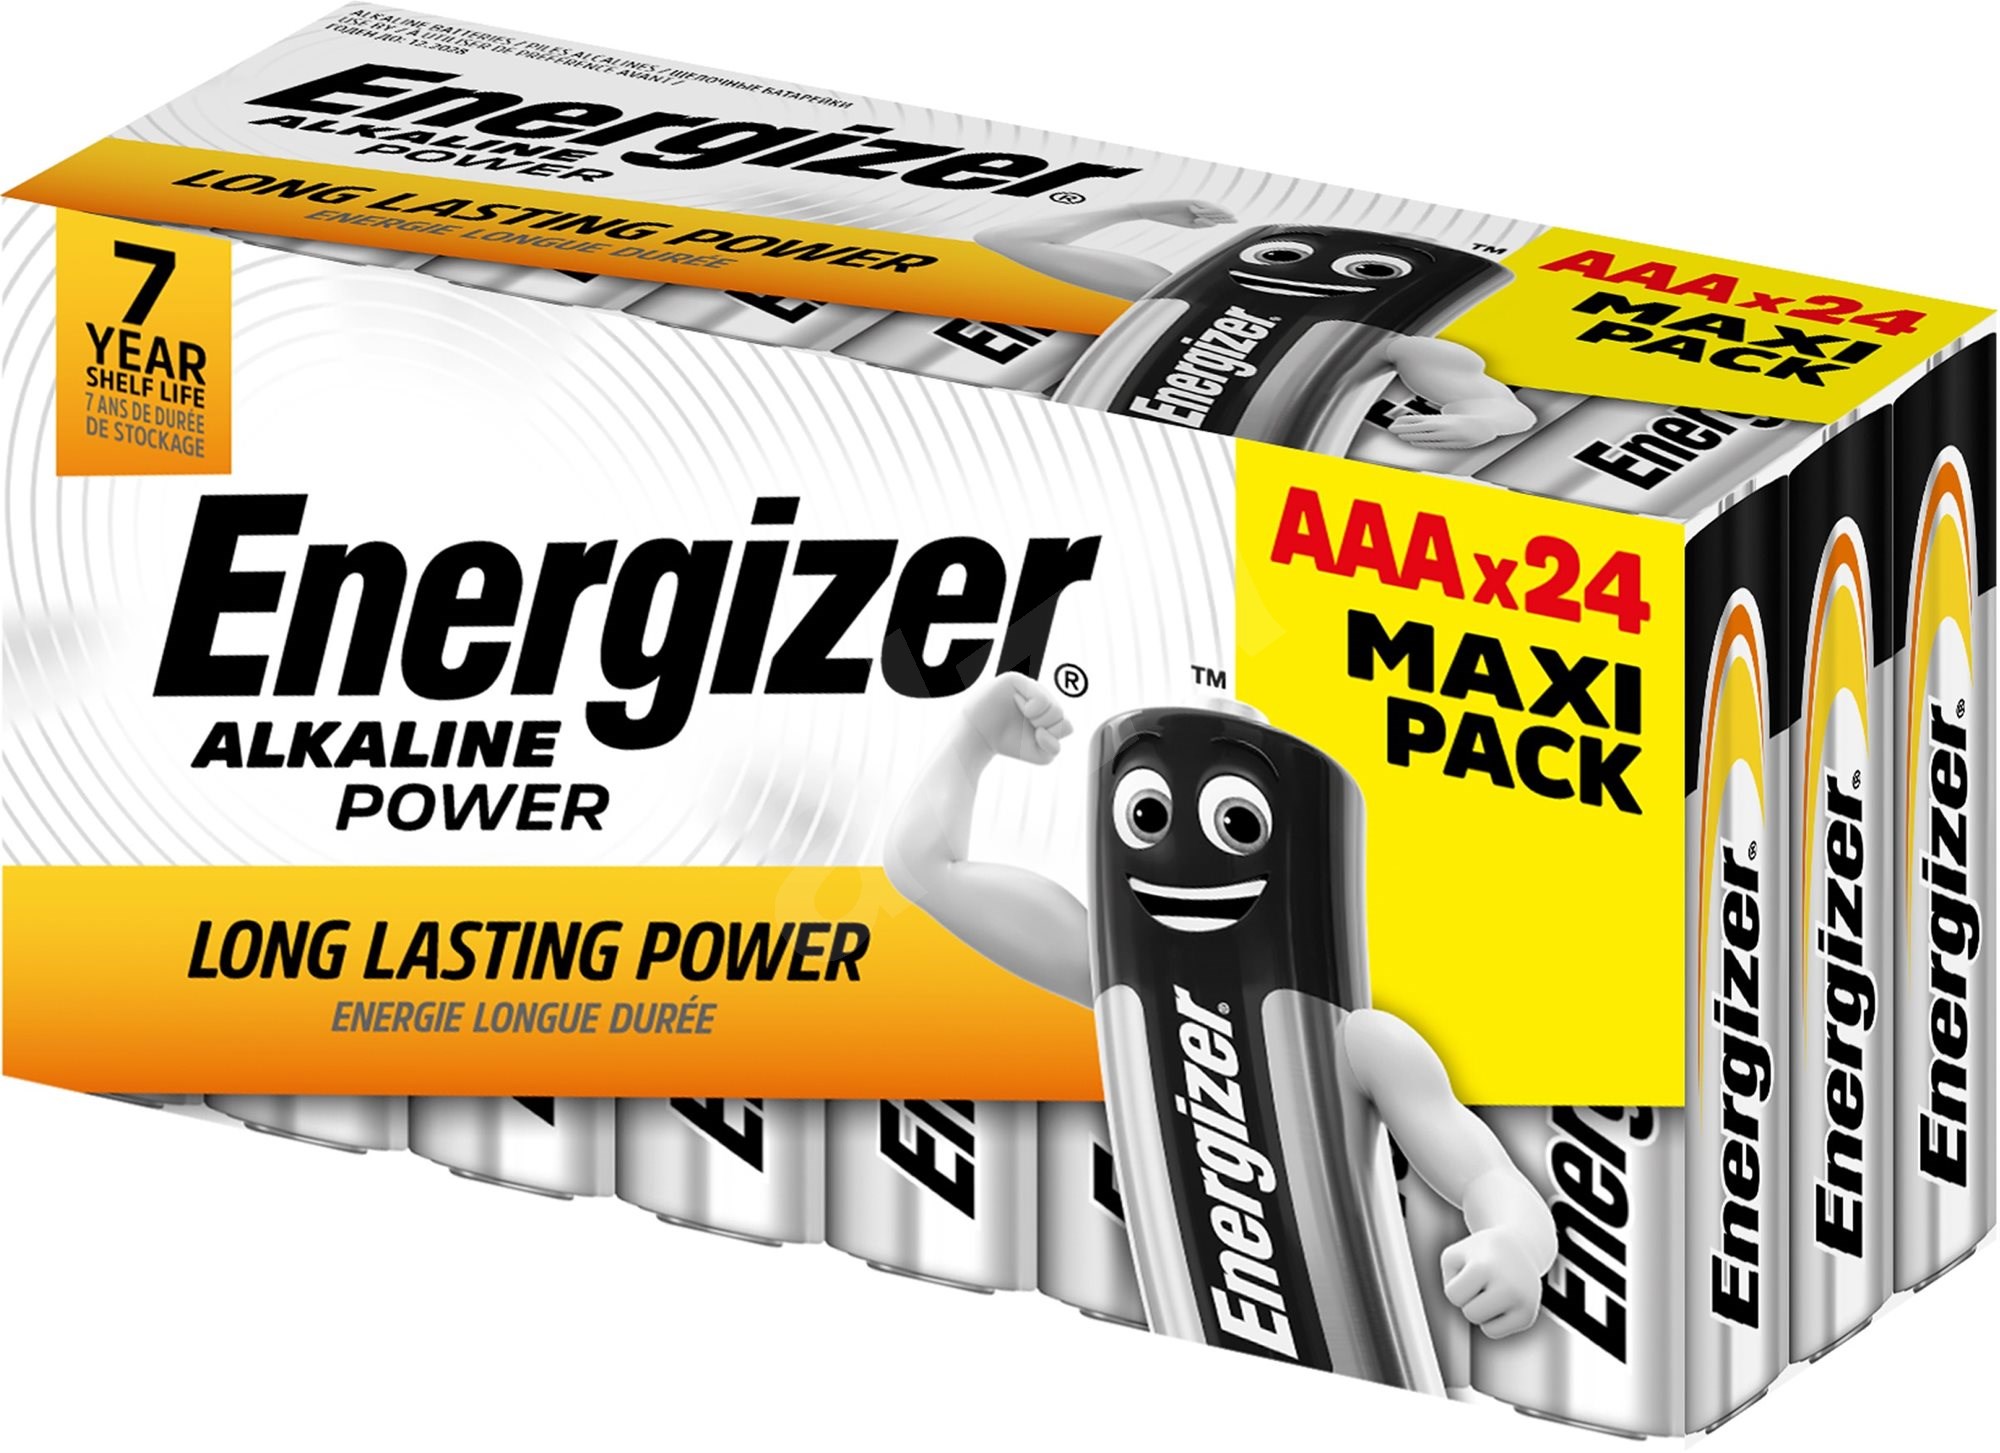 Energizer Alkaline Power AAA, Family pack 24ks akční balení alkalických baterií Energizer LR03 24ks